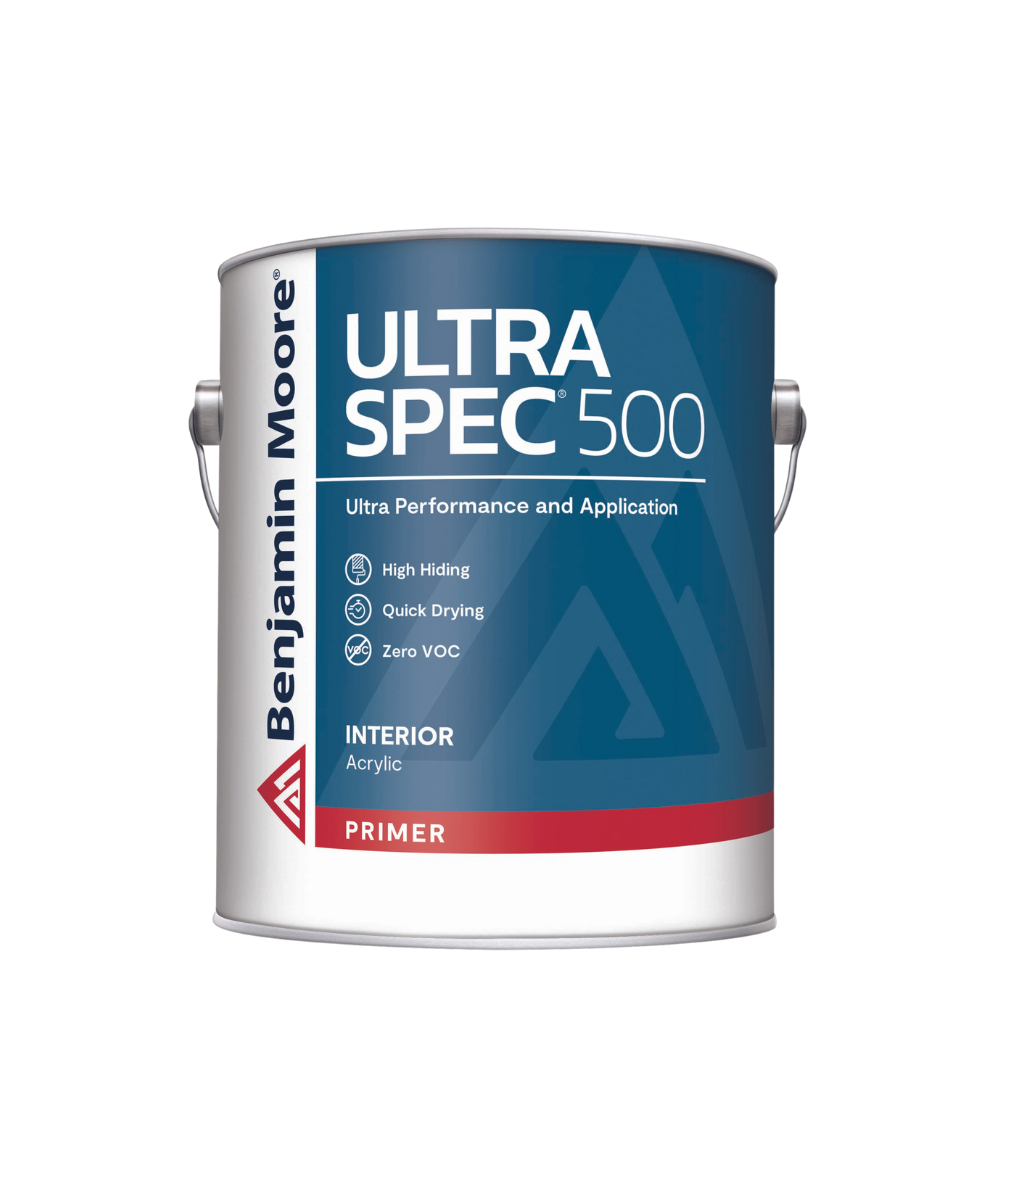 Benjamin Moore Ultra Spec 500 Interior Latex Primer, available at JC Licht.